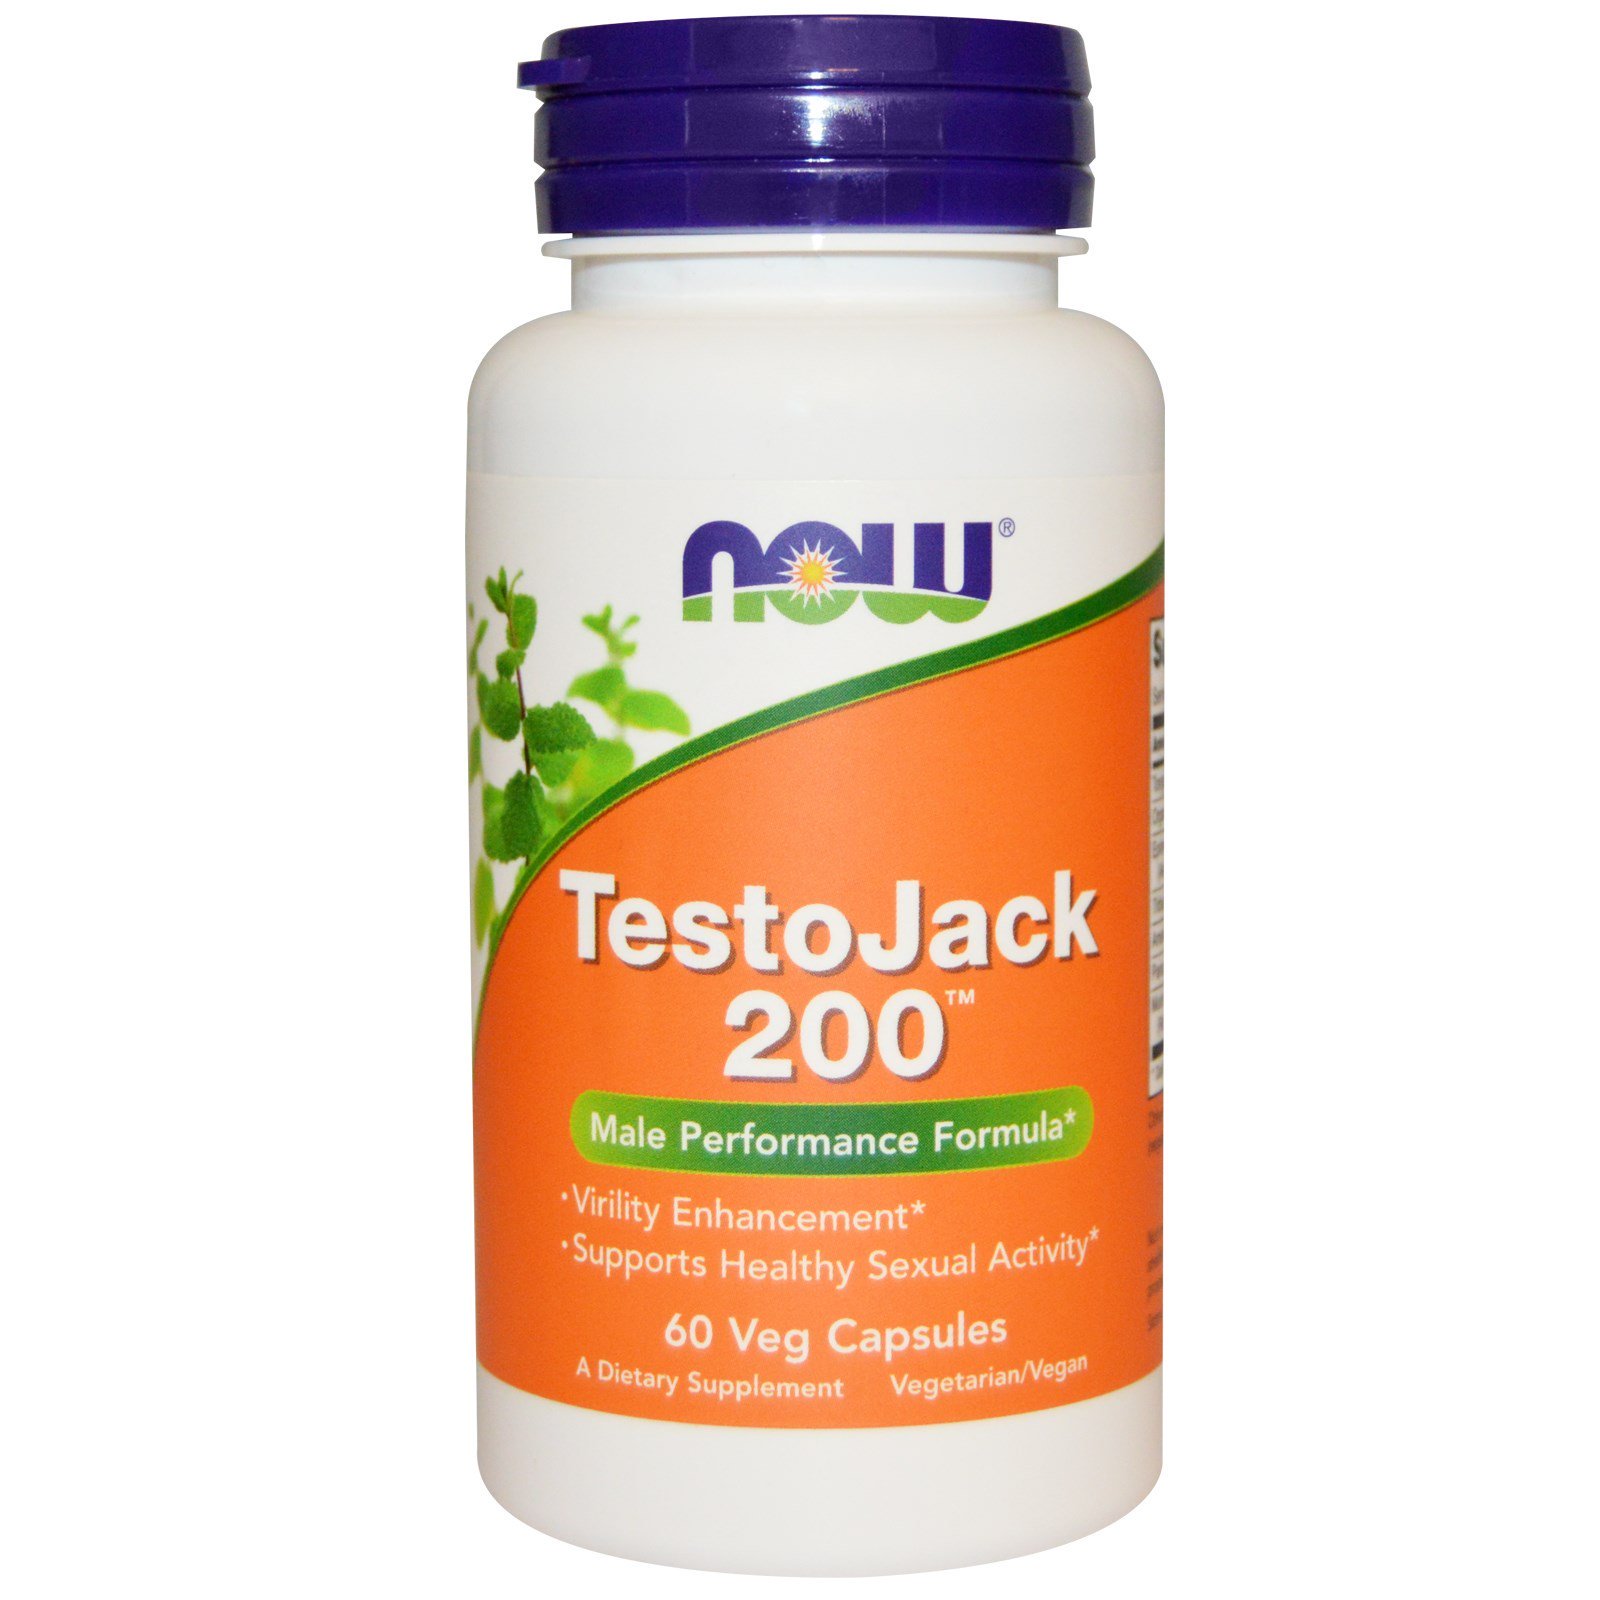 TestoJack 200, Тонгкат Али, Малазийский Женьшень, Комплекс 200 мг - 60 капсул